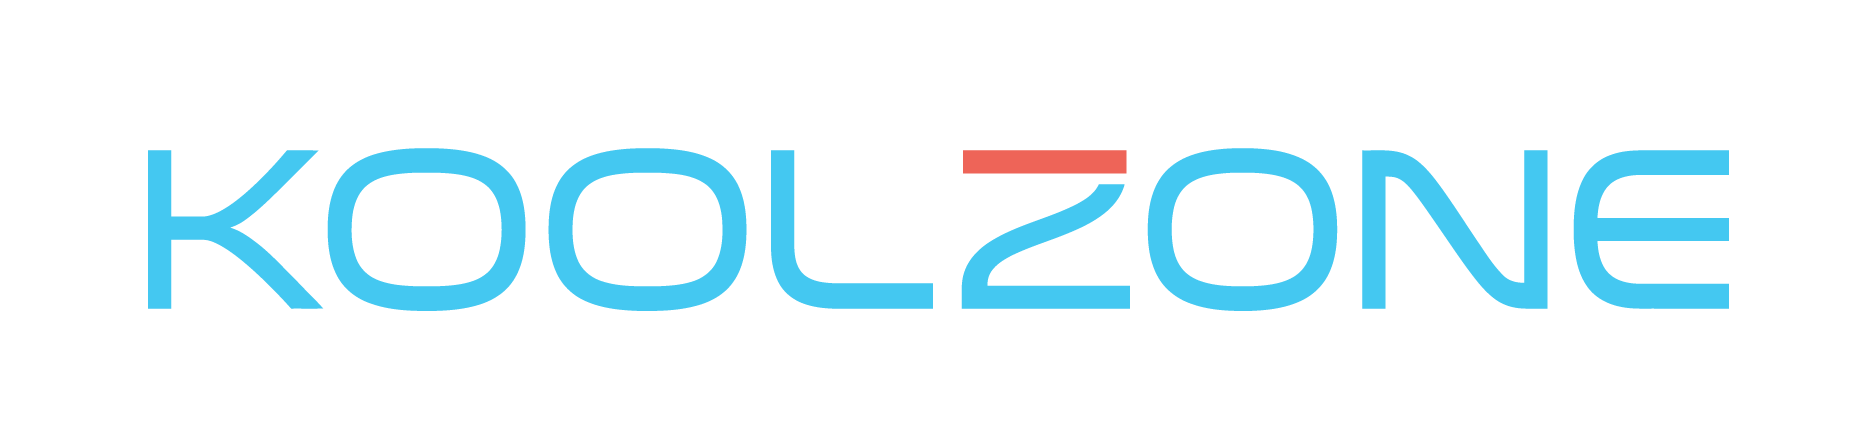 Koolzone.com